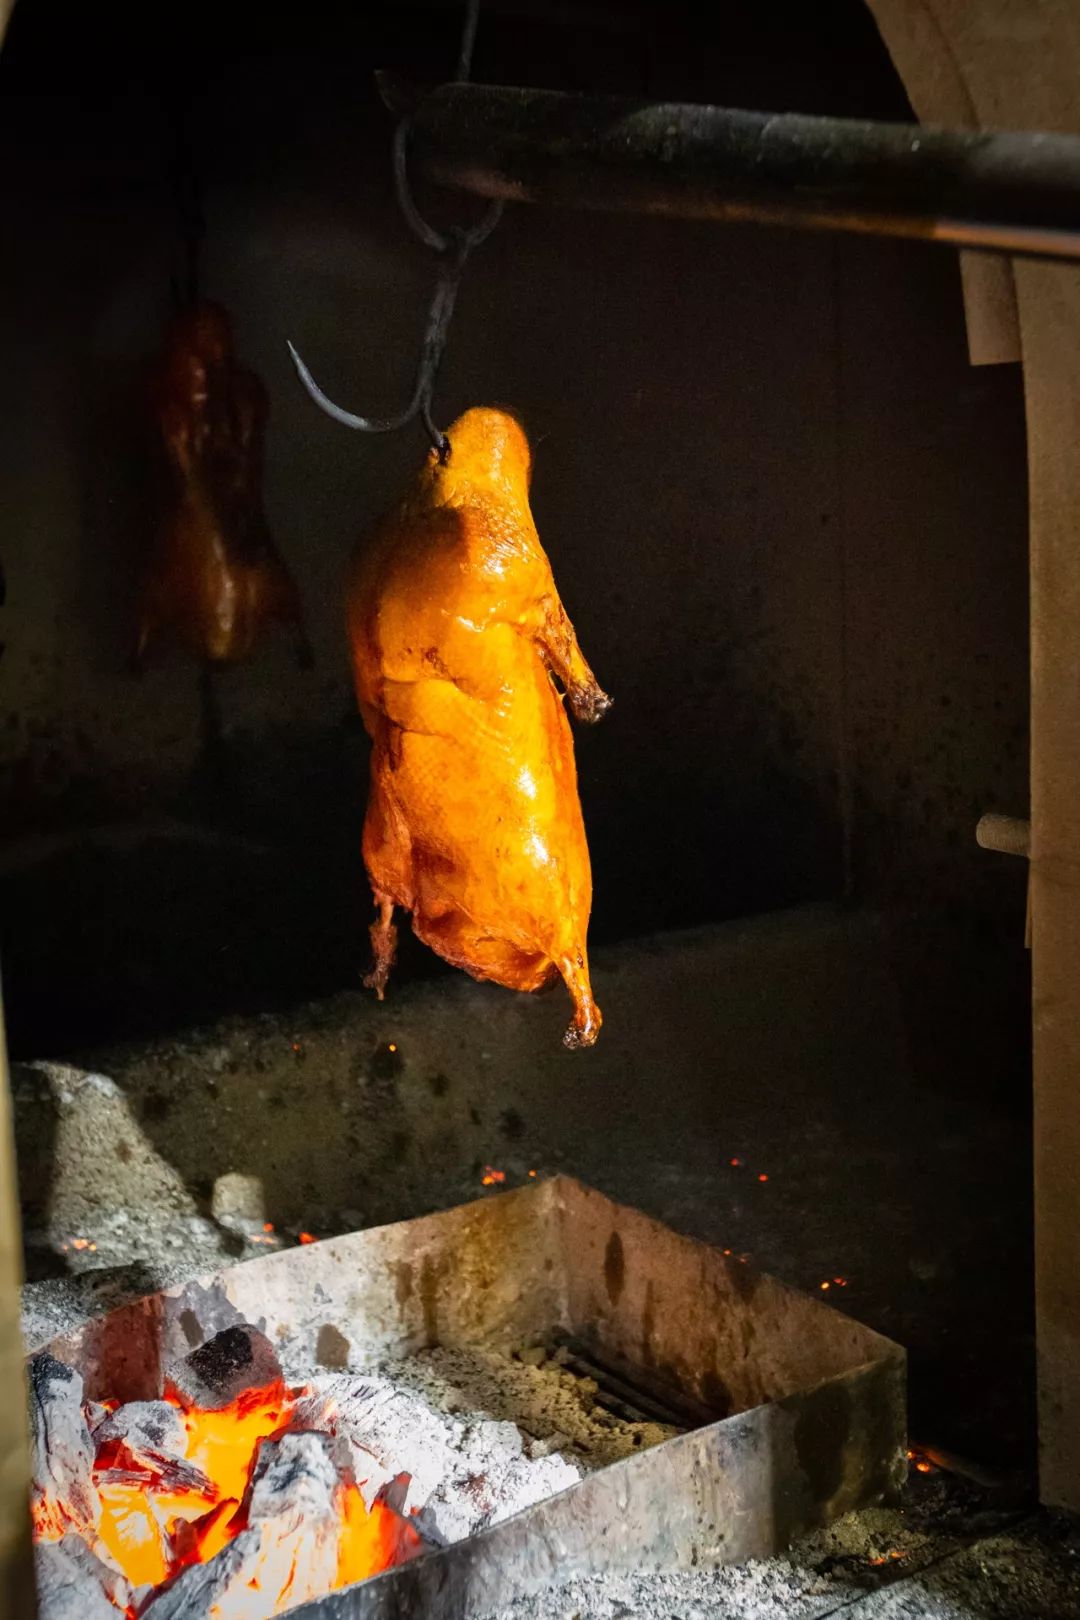 烤鸭渡上"金身"约要1小时左右,传统果木窑烤,火热的香气扑面而来,鸭皮